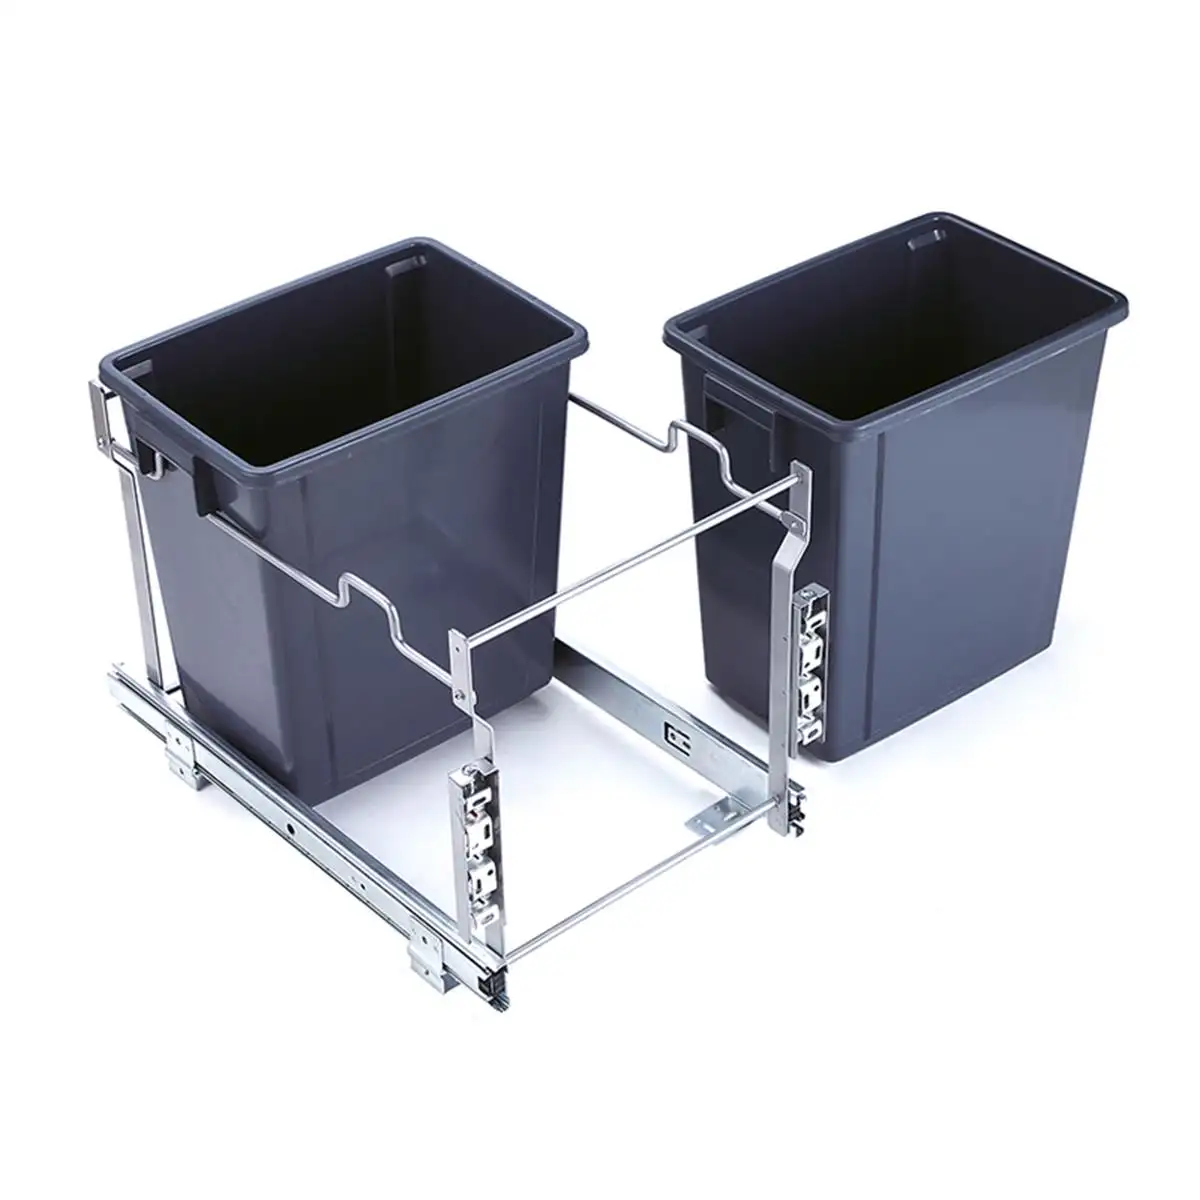 Gran oferta de TKK, cubo de basura extraíble integrado, cubo de basura para armario de cocina, cubo de basura deslizante de 400 mm